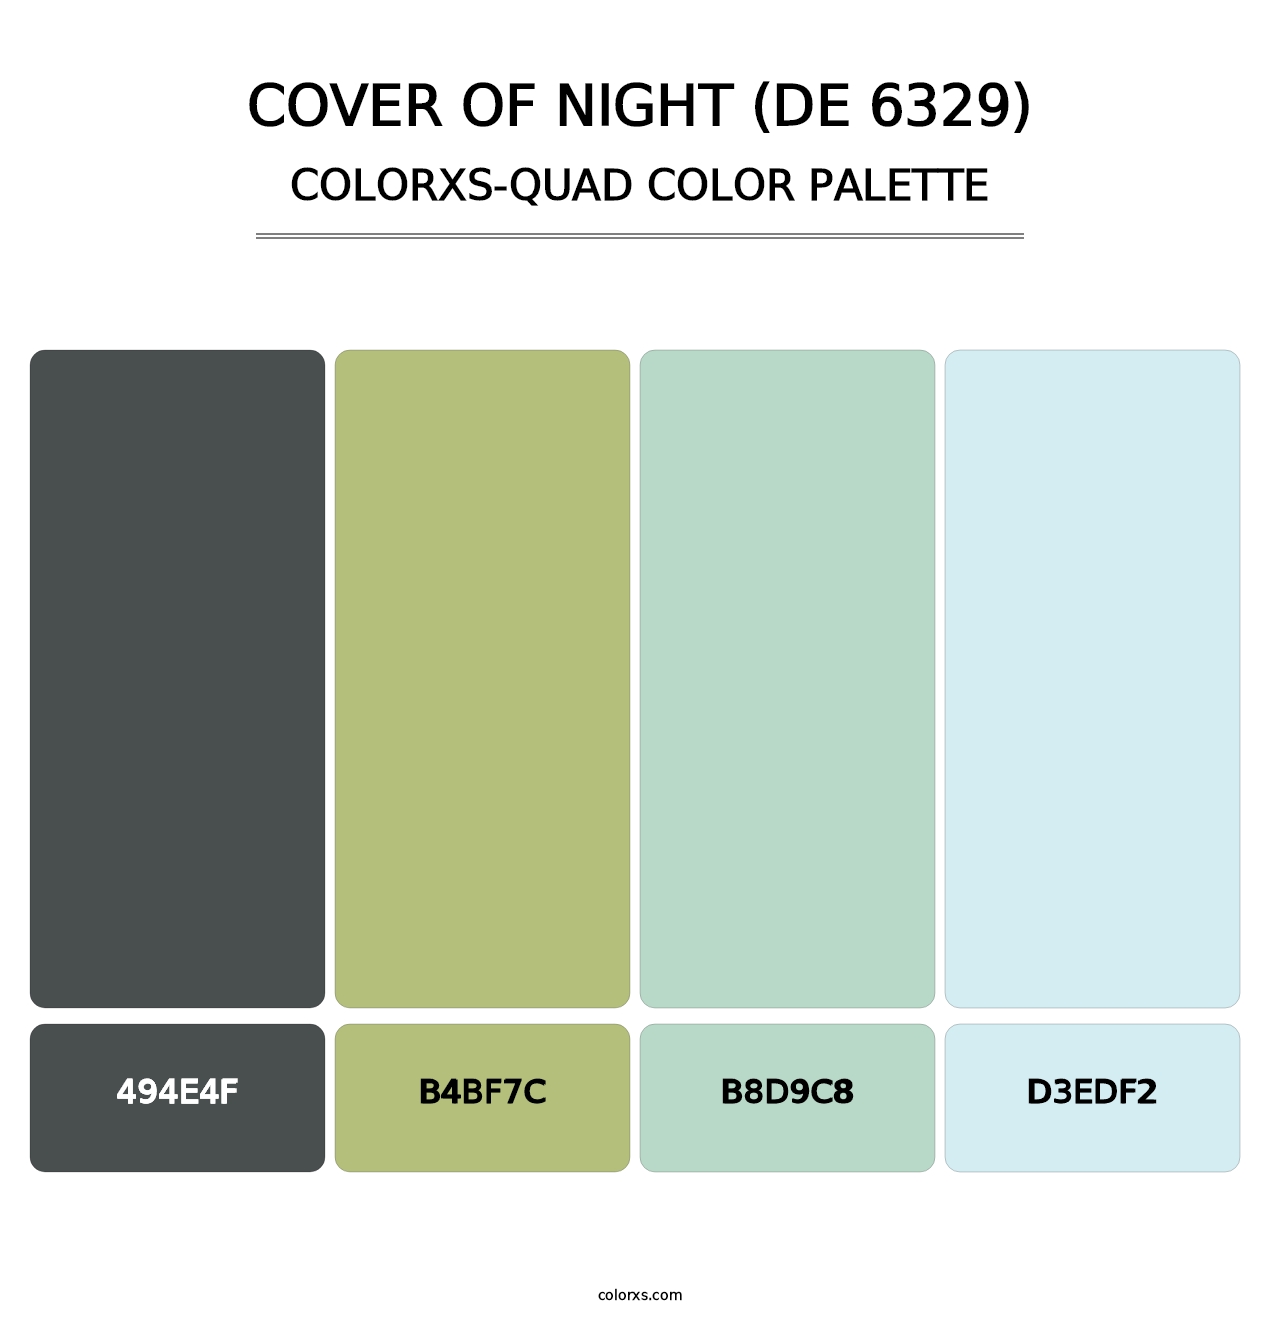 Cover of Night (DE 6329) - Colorxs Quad Palette